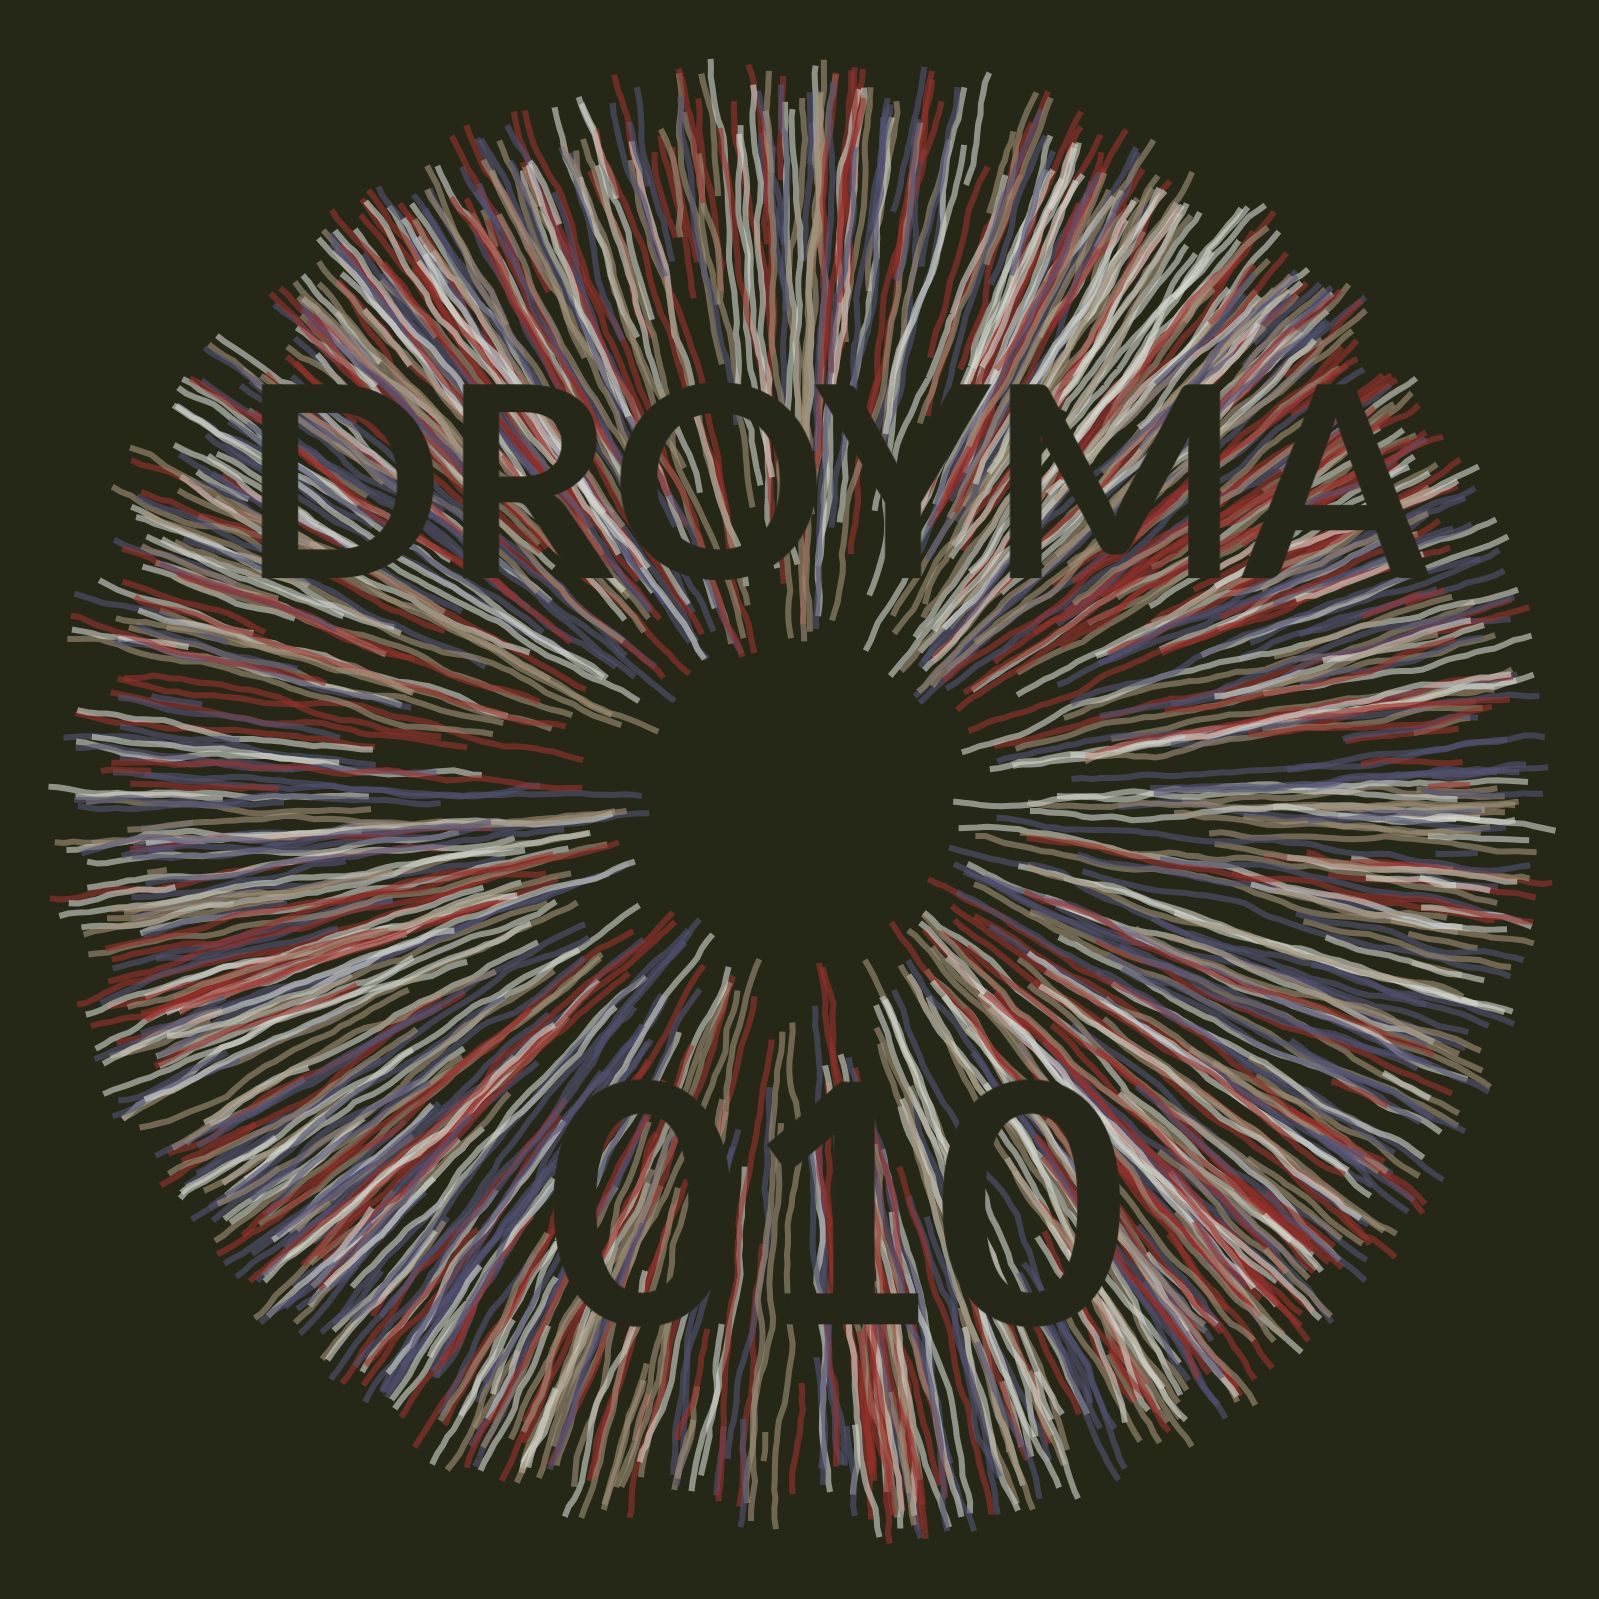 Tải xuống Droyma Mix 010 - April 2019